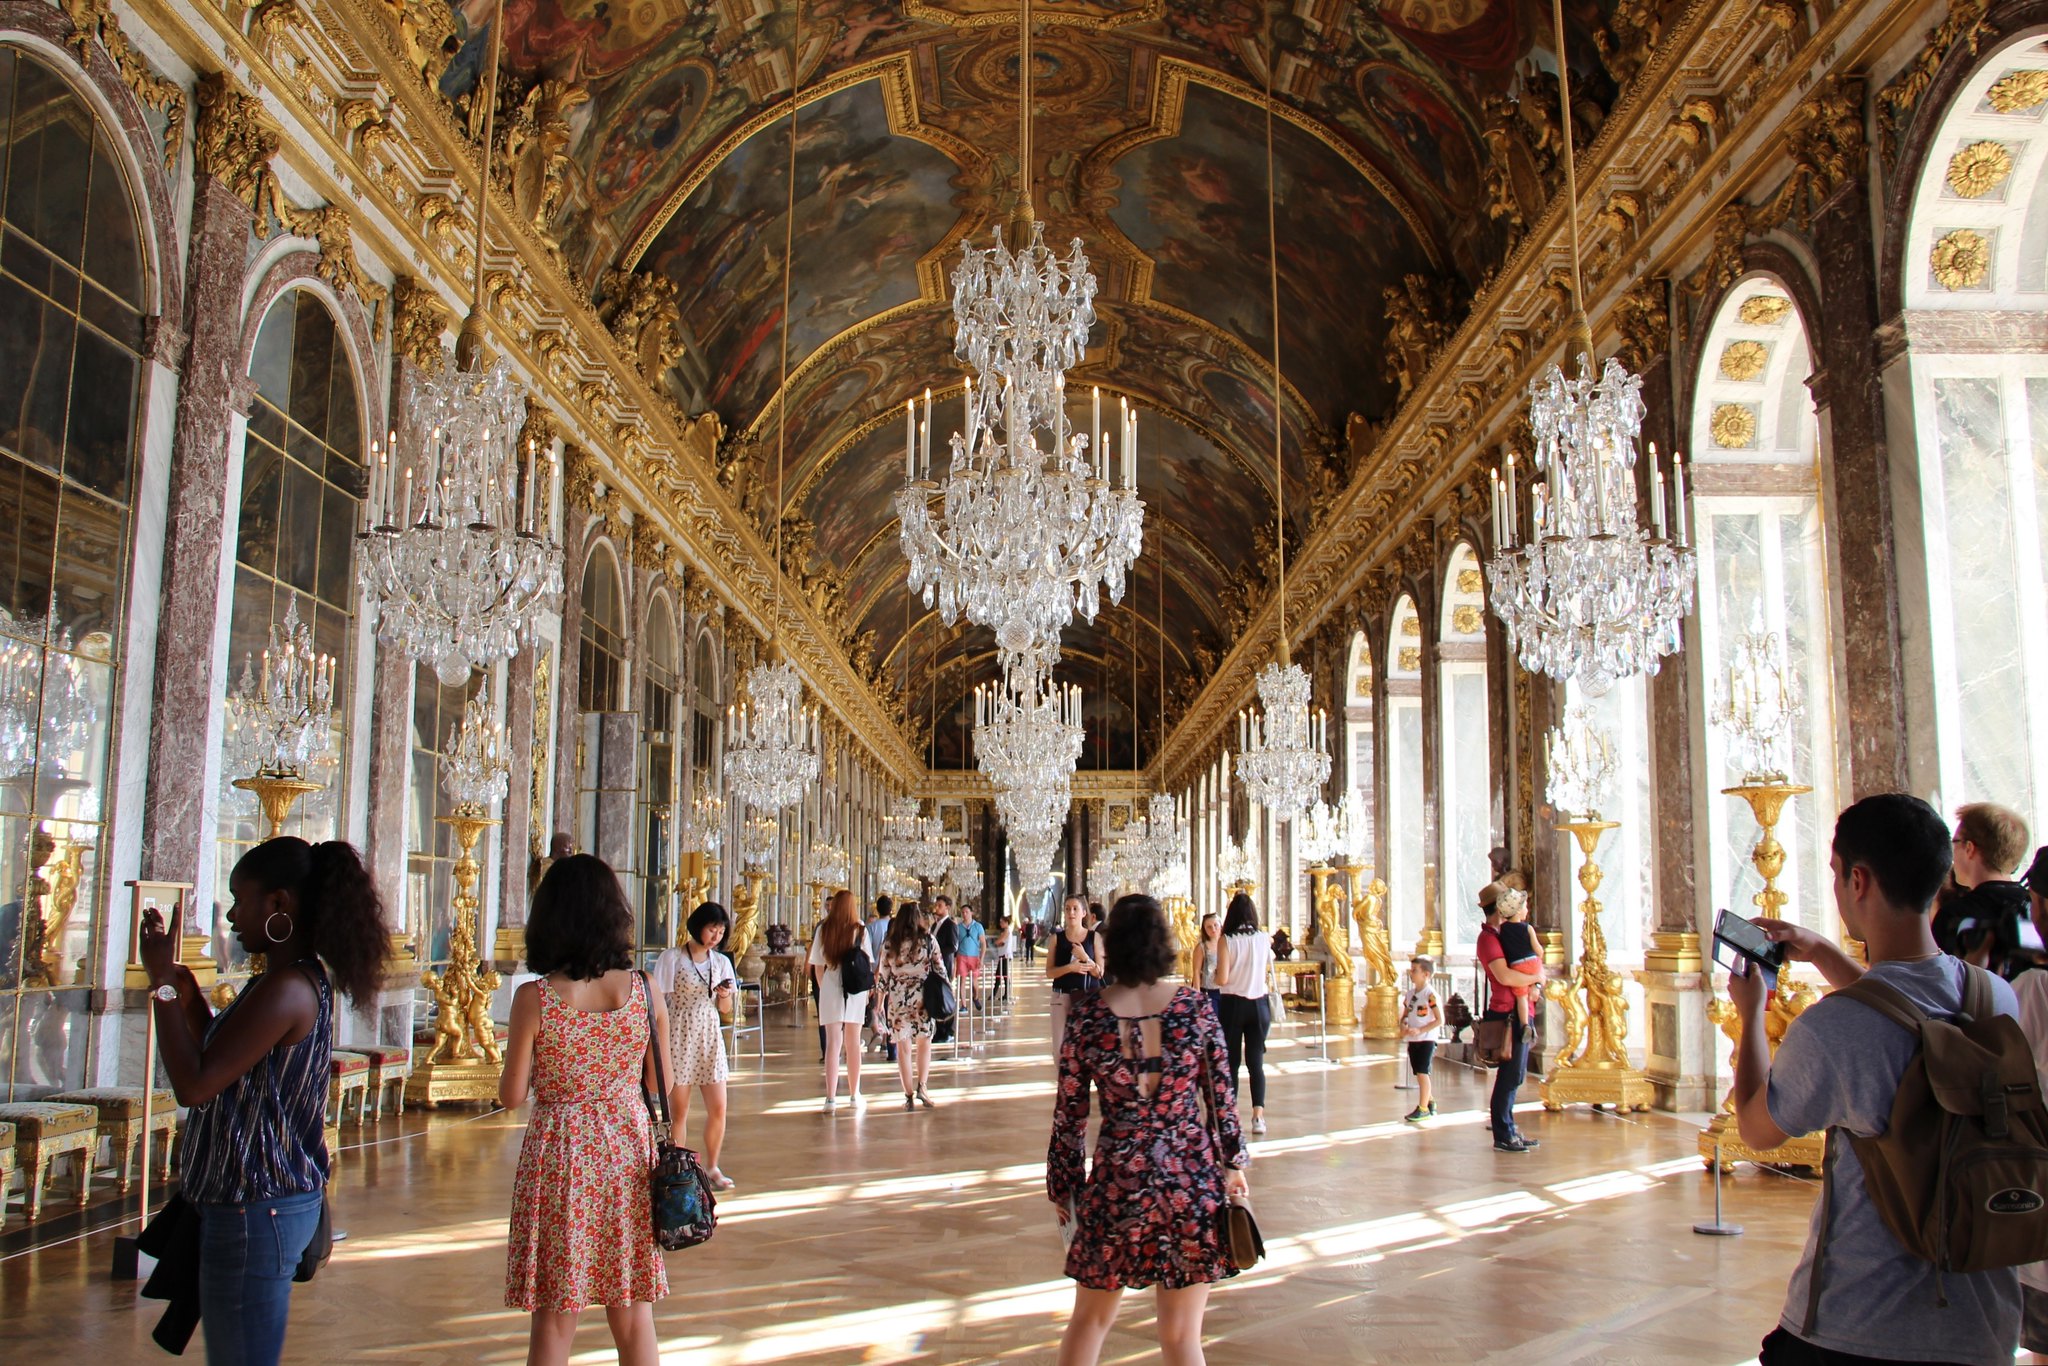 Chateau de versailles. Версальский дворец, Версаль дворец Версаля. Королевский дворец в Версале.